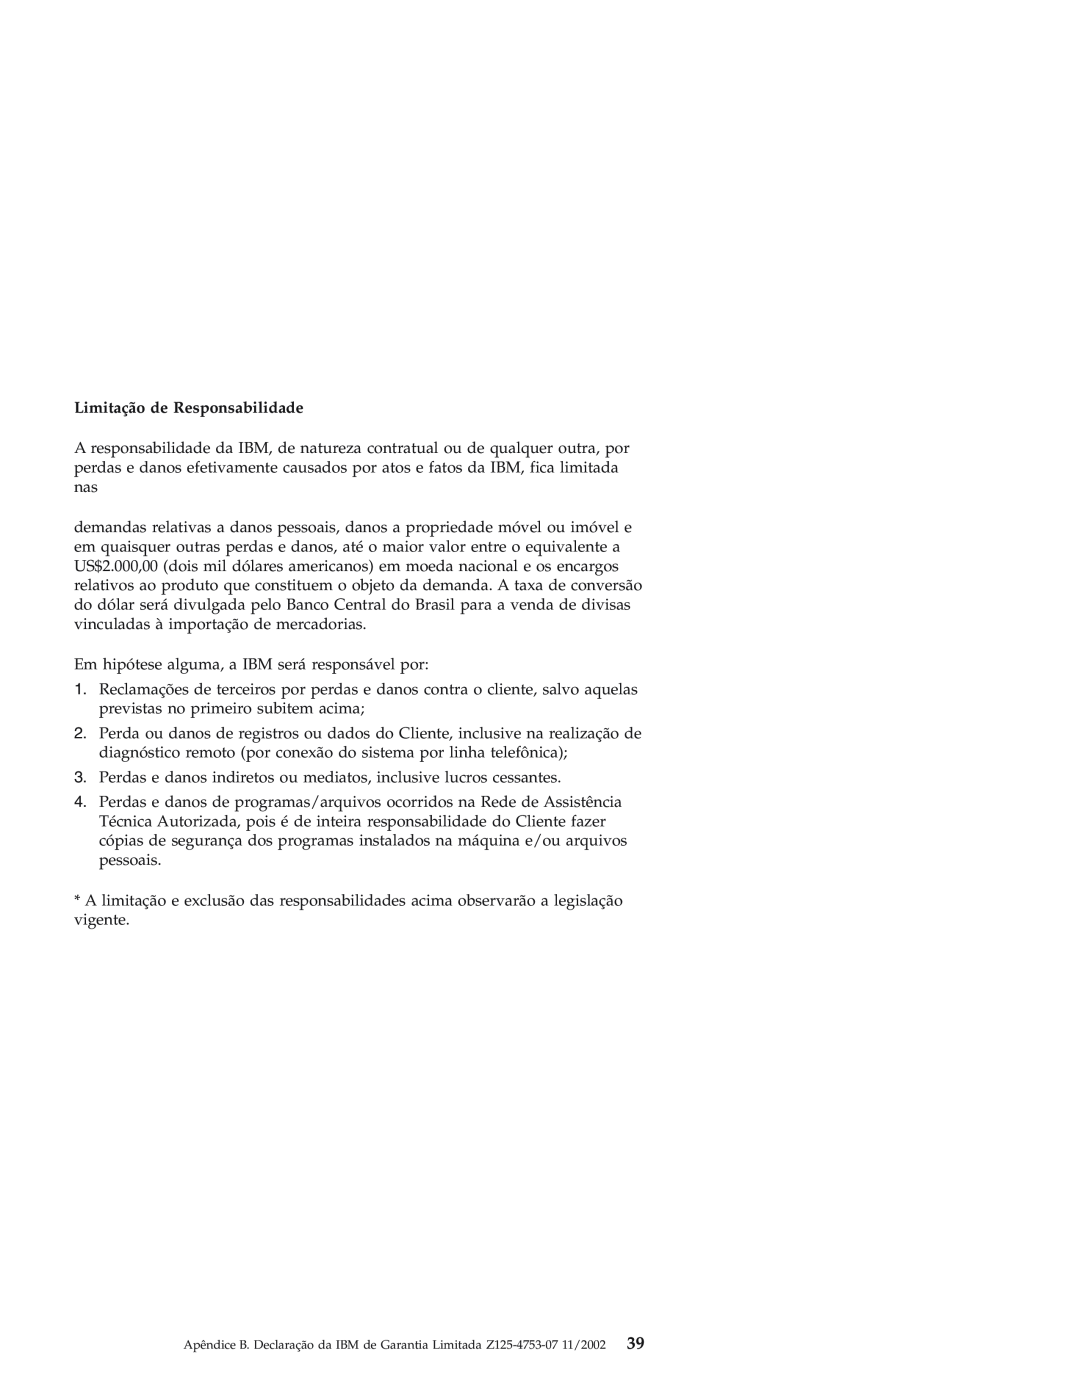 IBM Personal Computer manual Limitação de Responsabilidade 